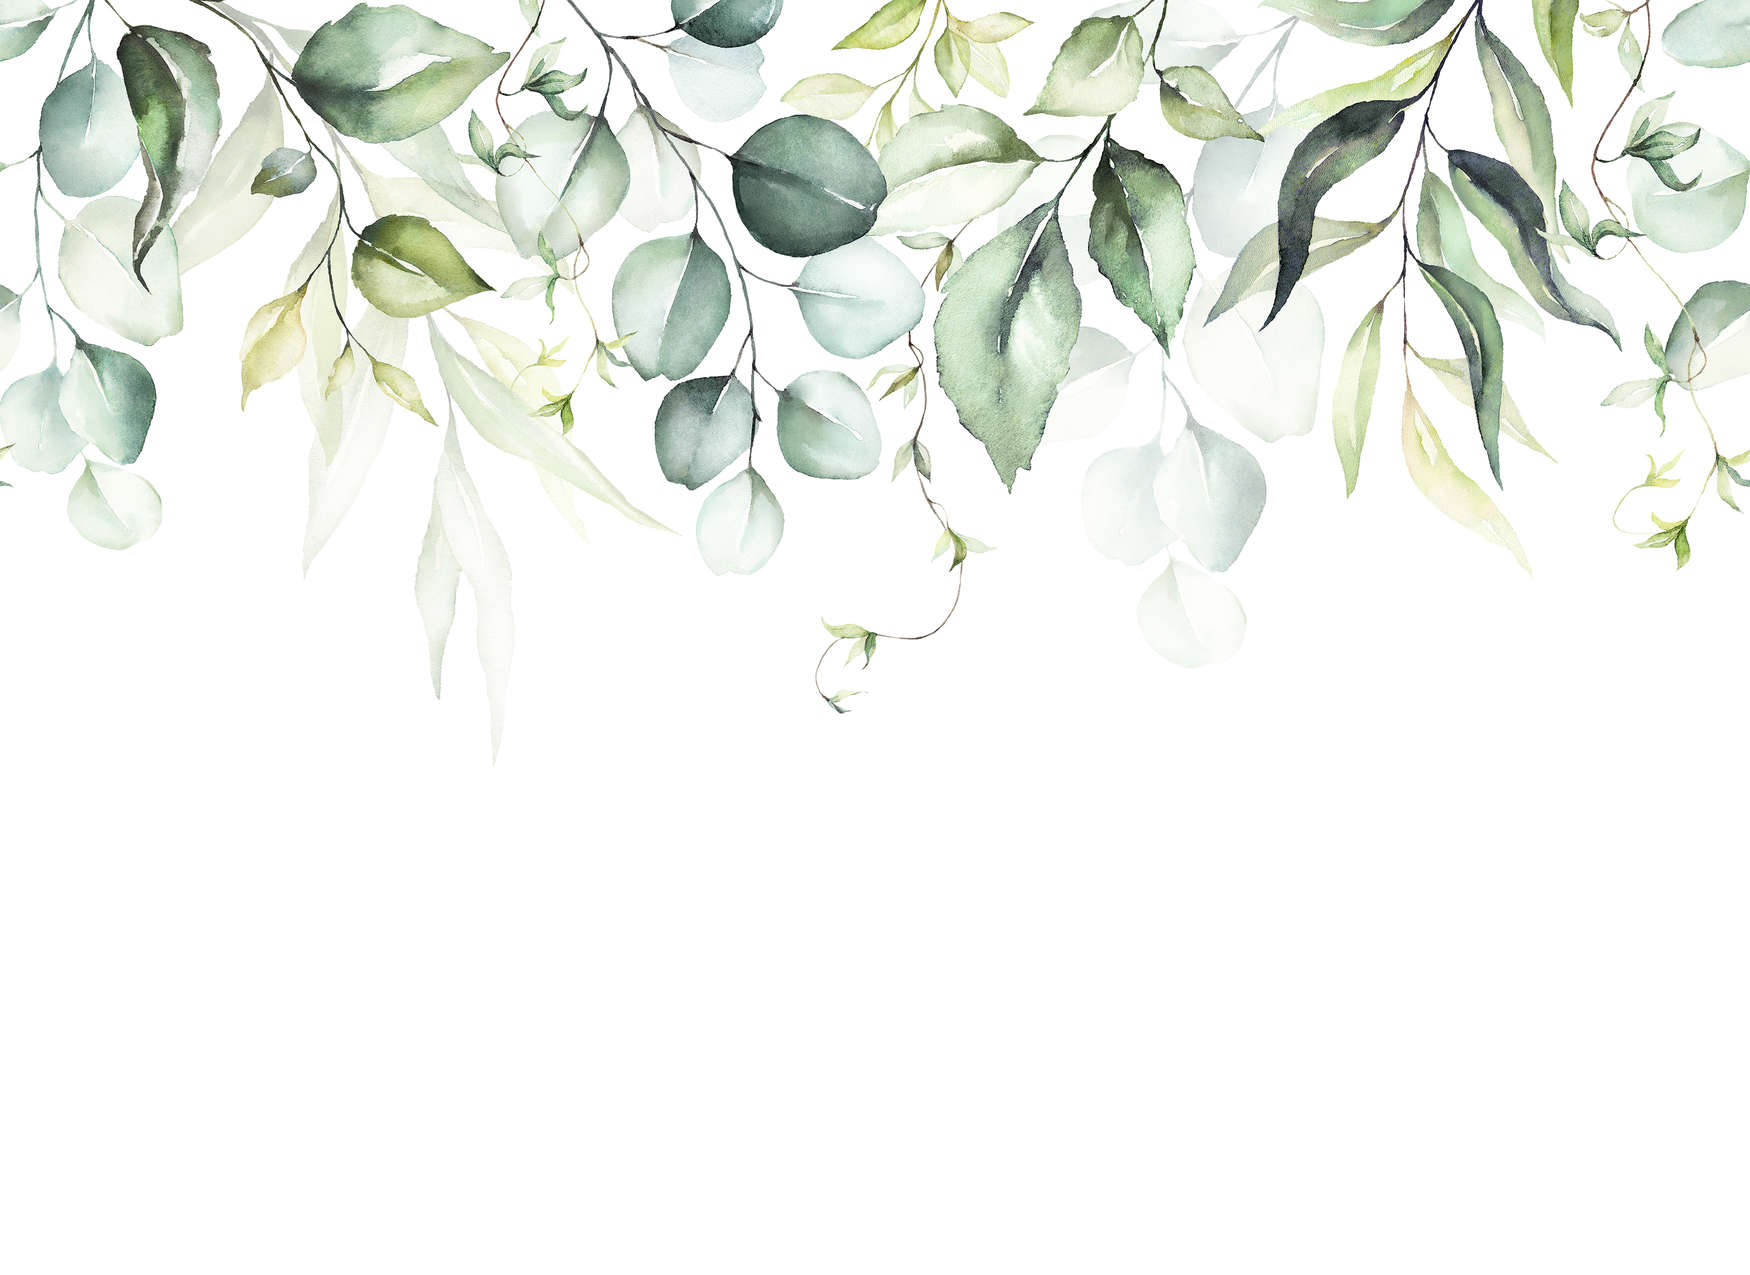             Fototapete mit Blätterranken im Wasserfarben-Look – Weiß, Grün
        